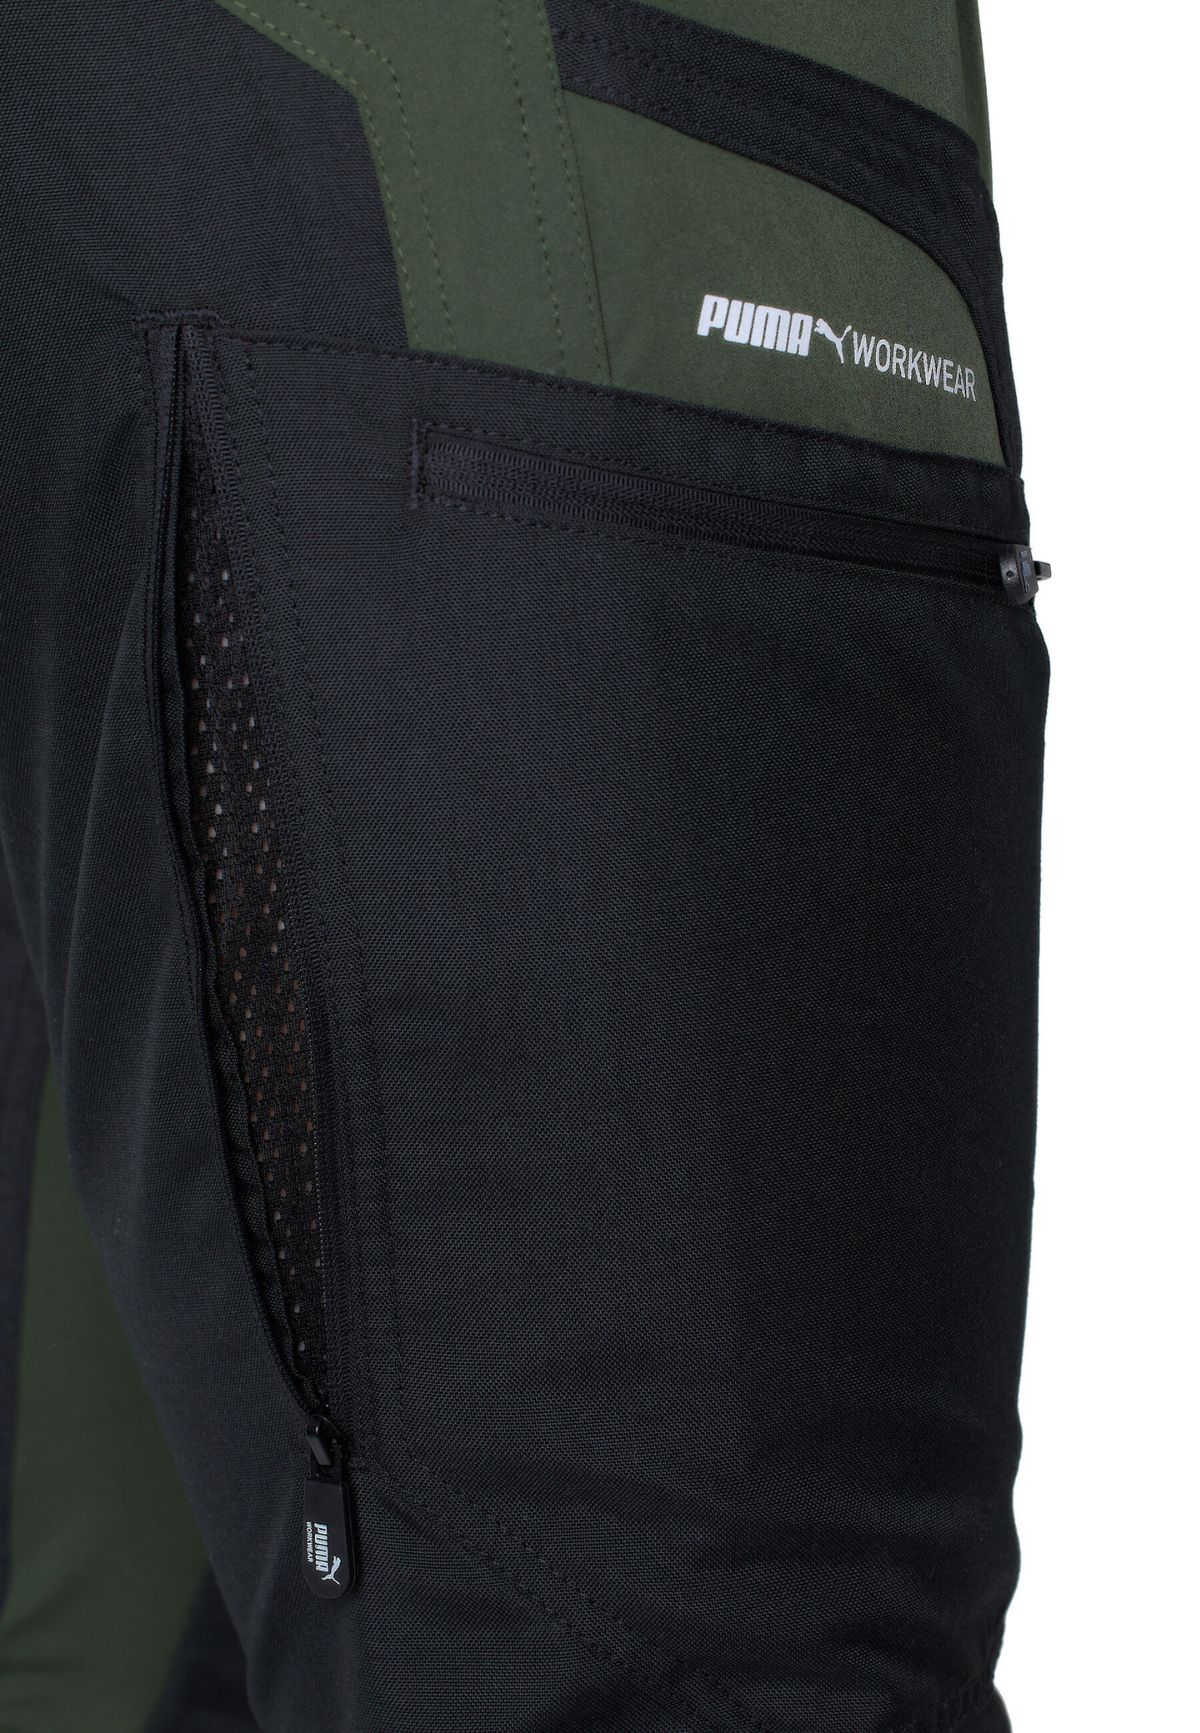 Puma Workwear PW1000 - Calças de trabalho de homem